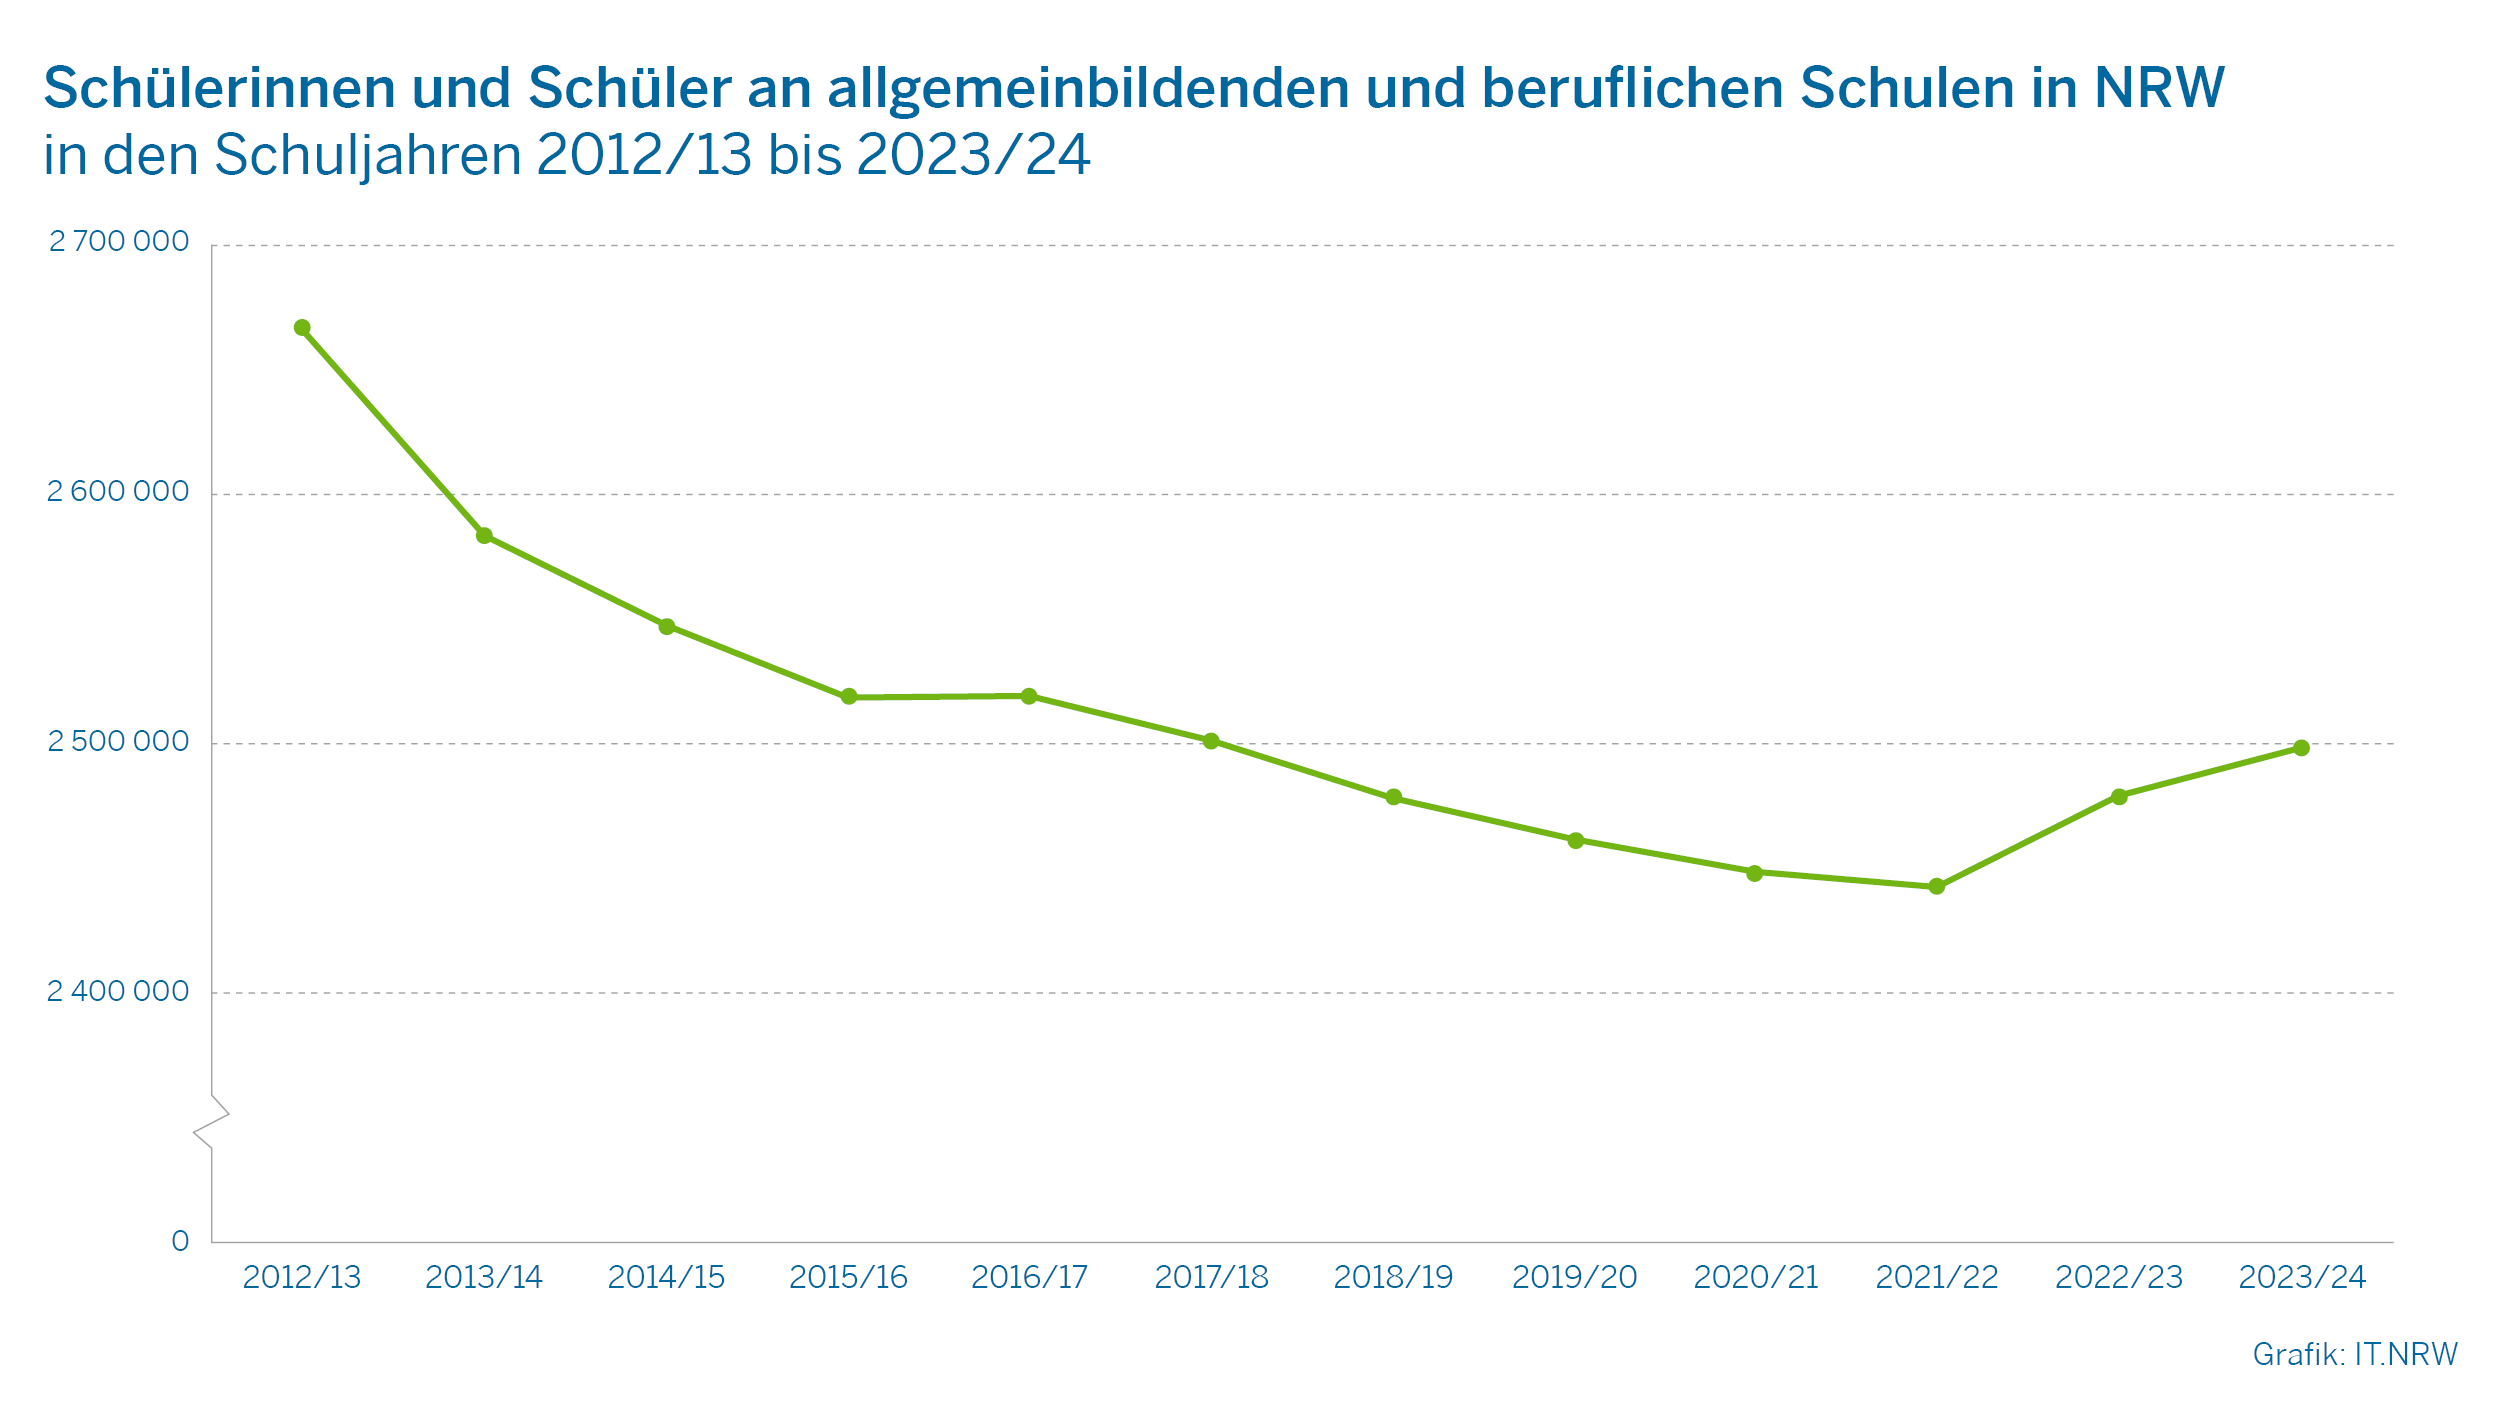 Schülerinnen und Schüler an allgemeinbildenden und beruflichen Schulen in NRW in den Schuljahren 2012/13 bis 2023/24